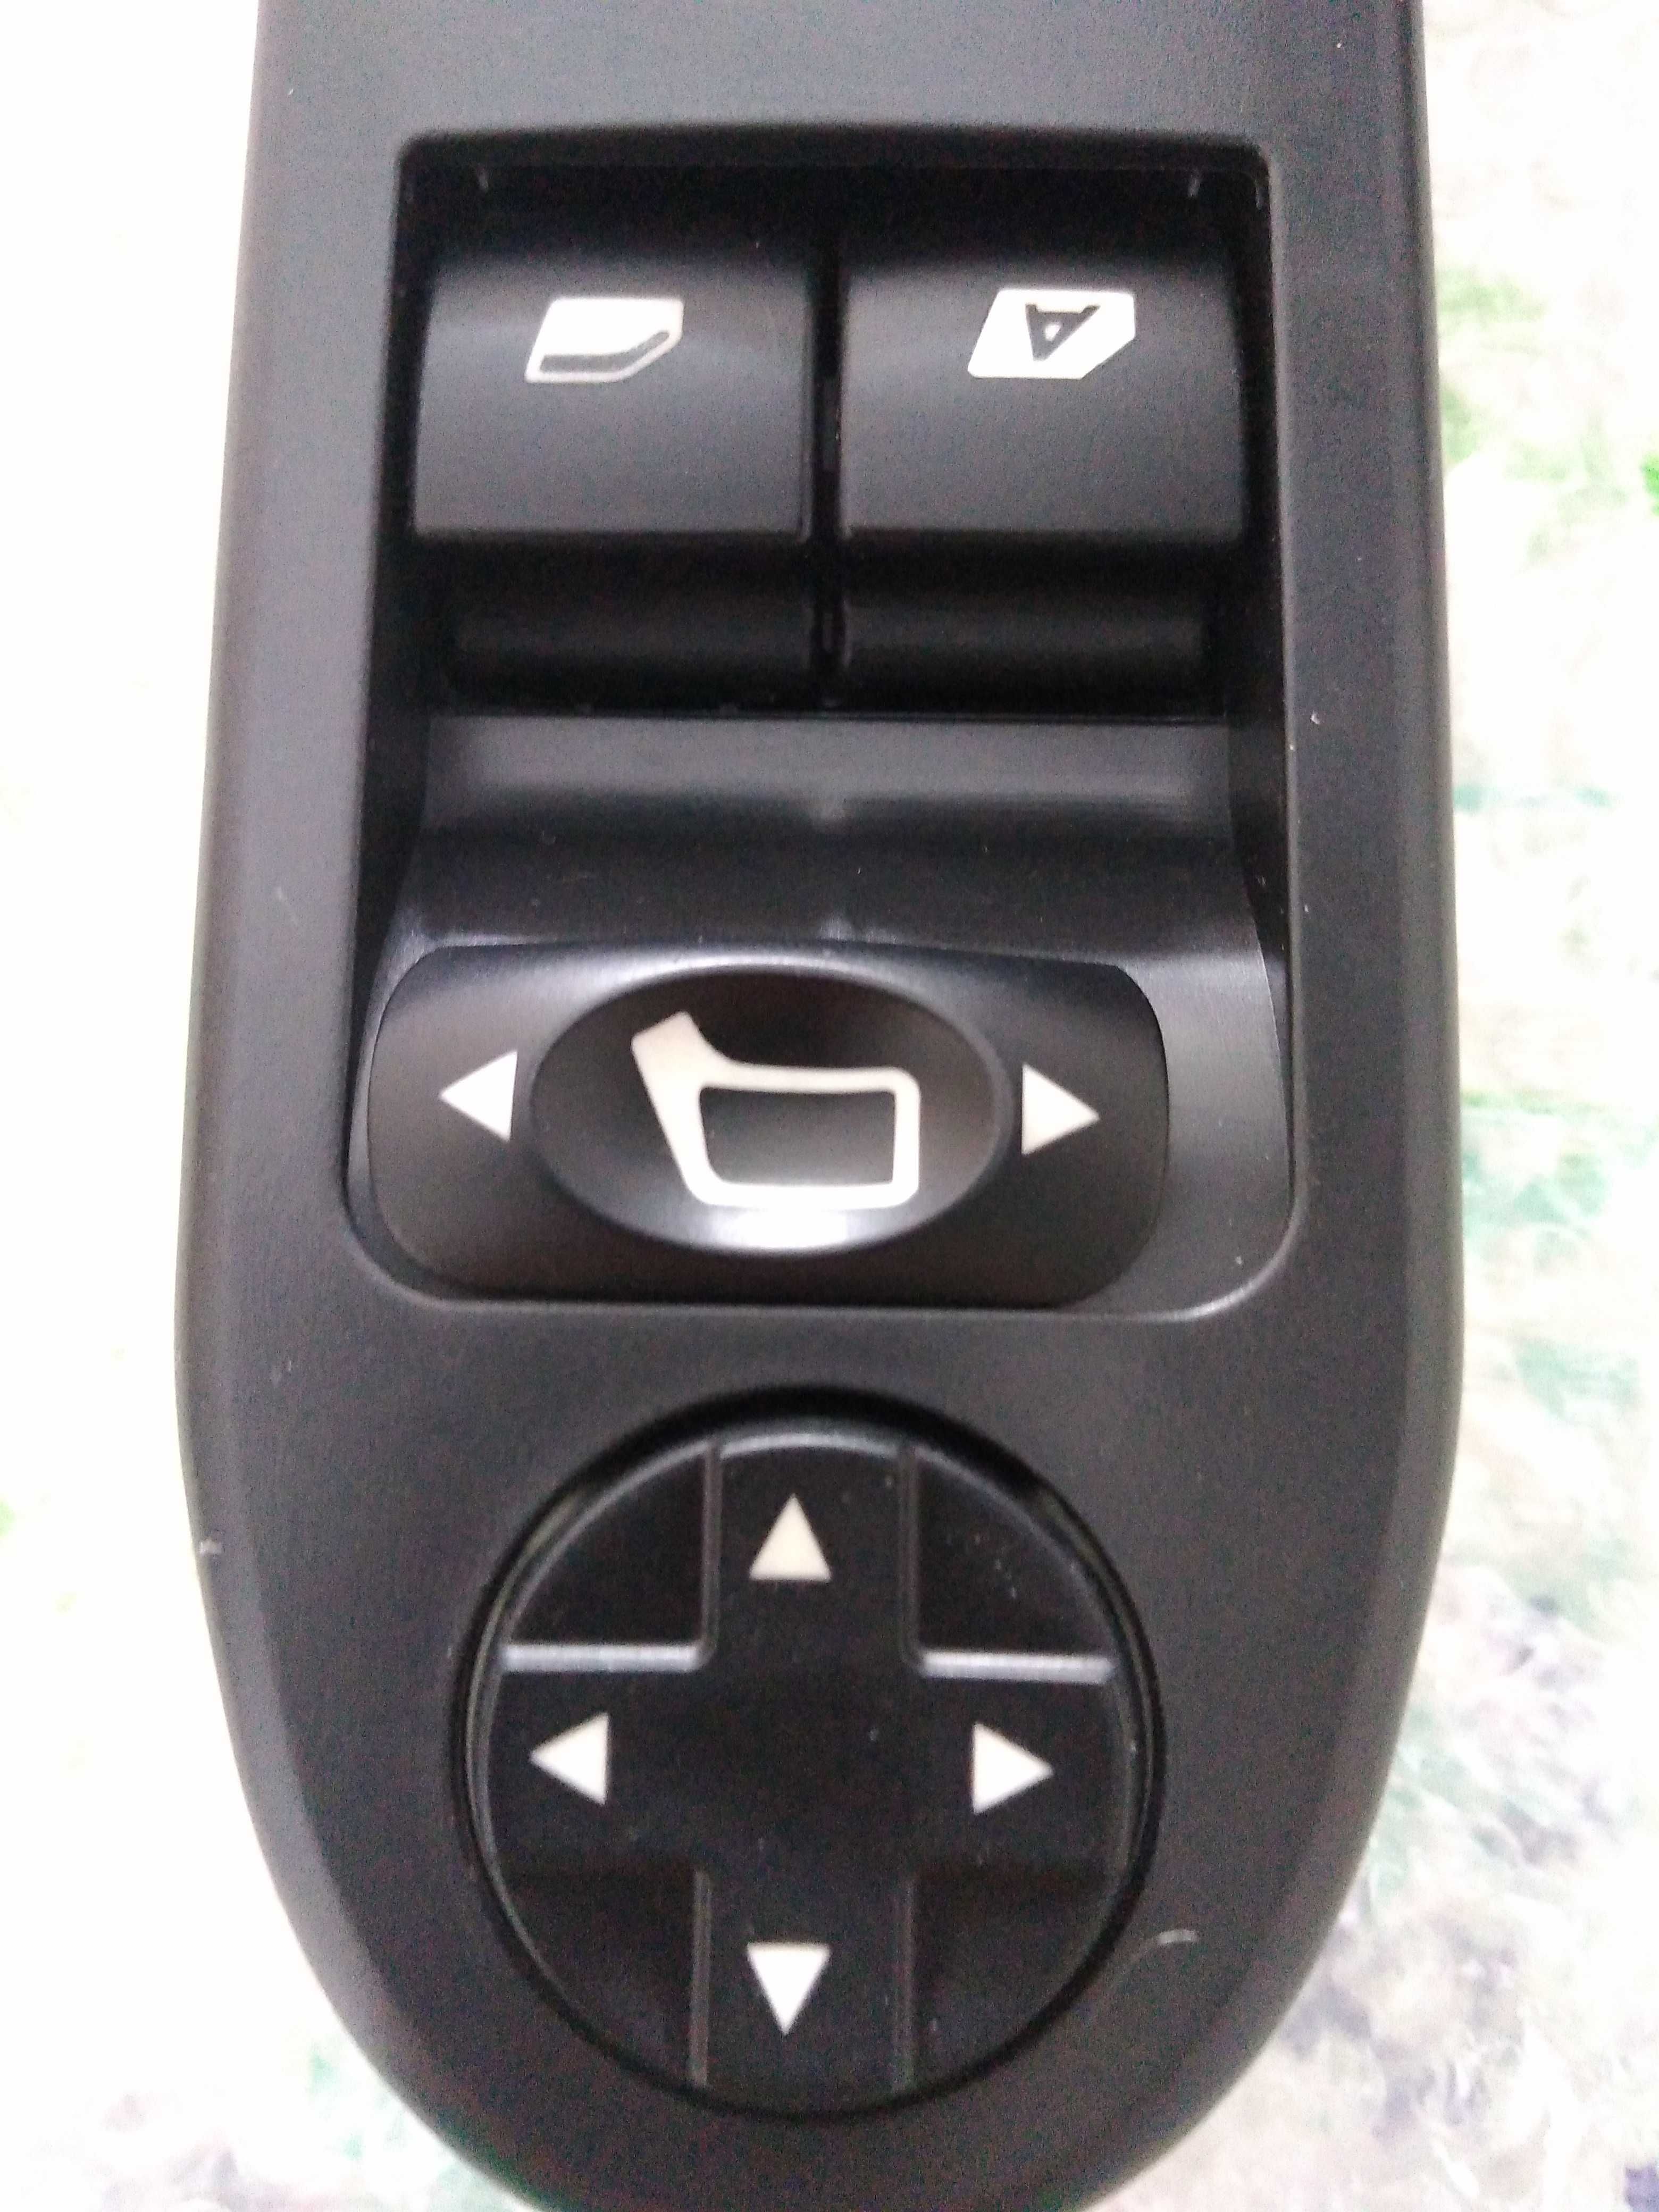 Comando botões interruptor vidros peugeot 207 novo. Nunca usado.